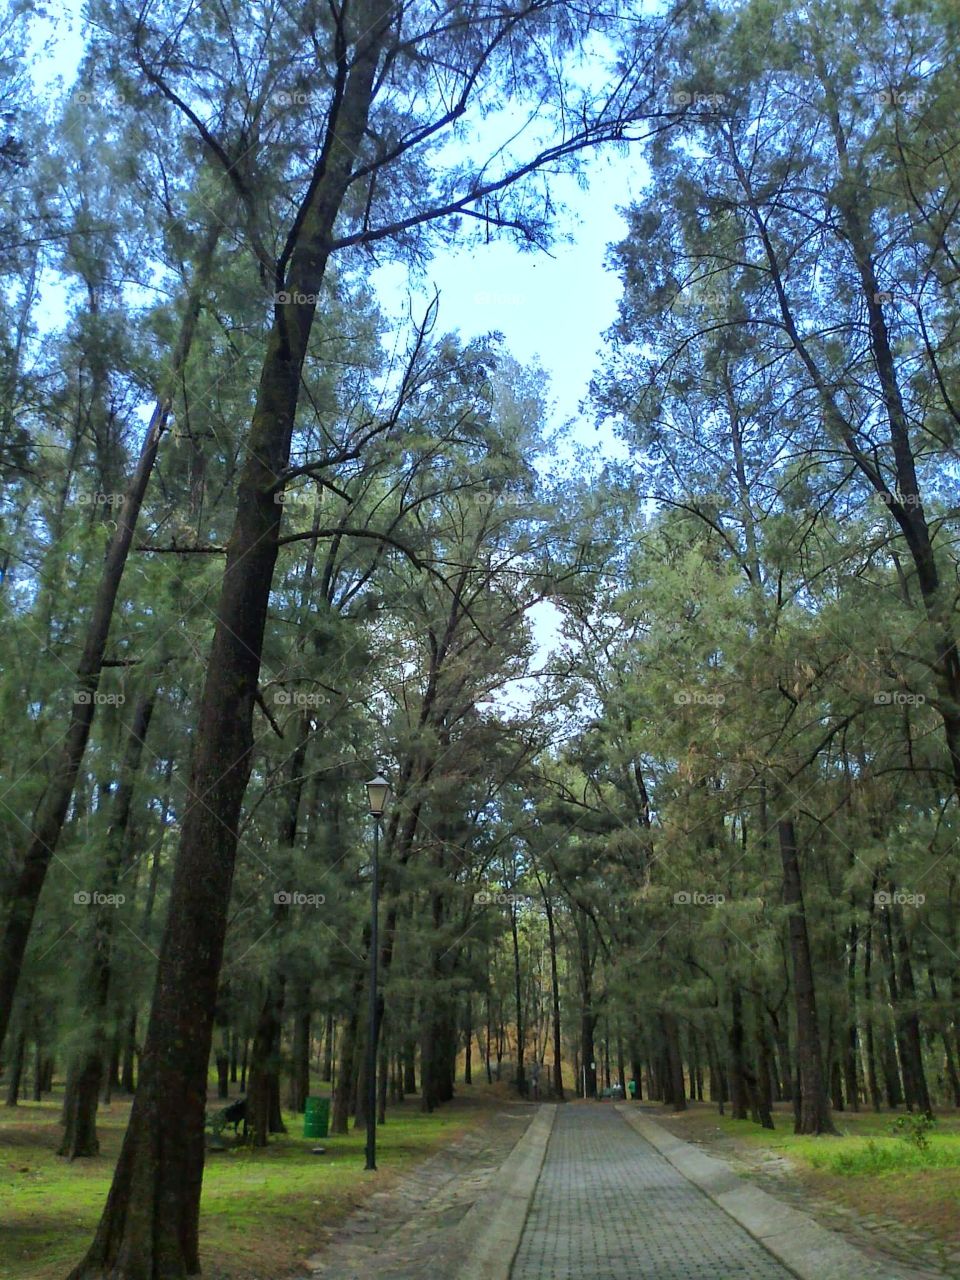 Bosque Colomos in Guadalajara.